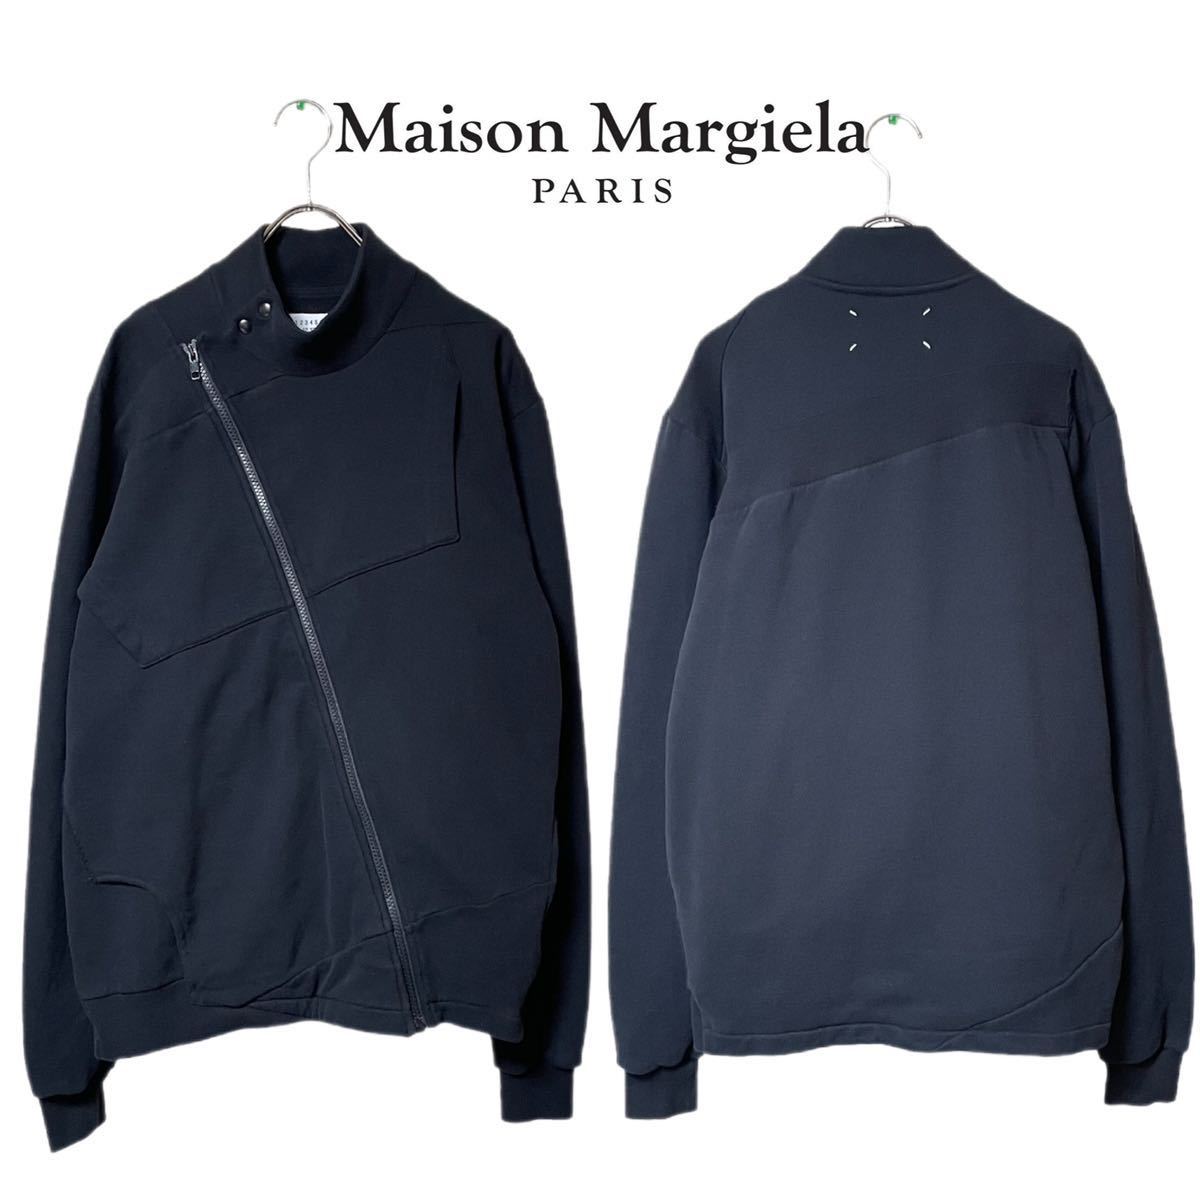 Maison Margiela 再構築 ブレザー 46 - 通販 - gofukuyasan.com